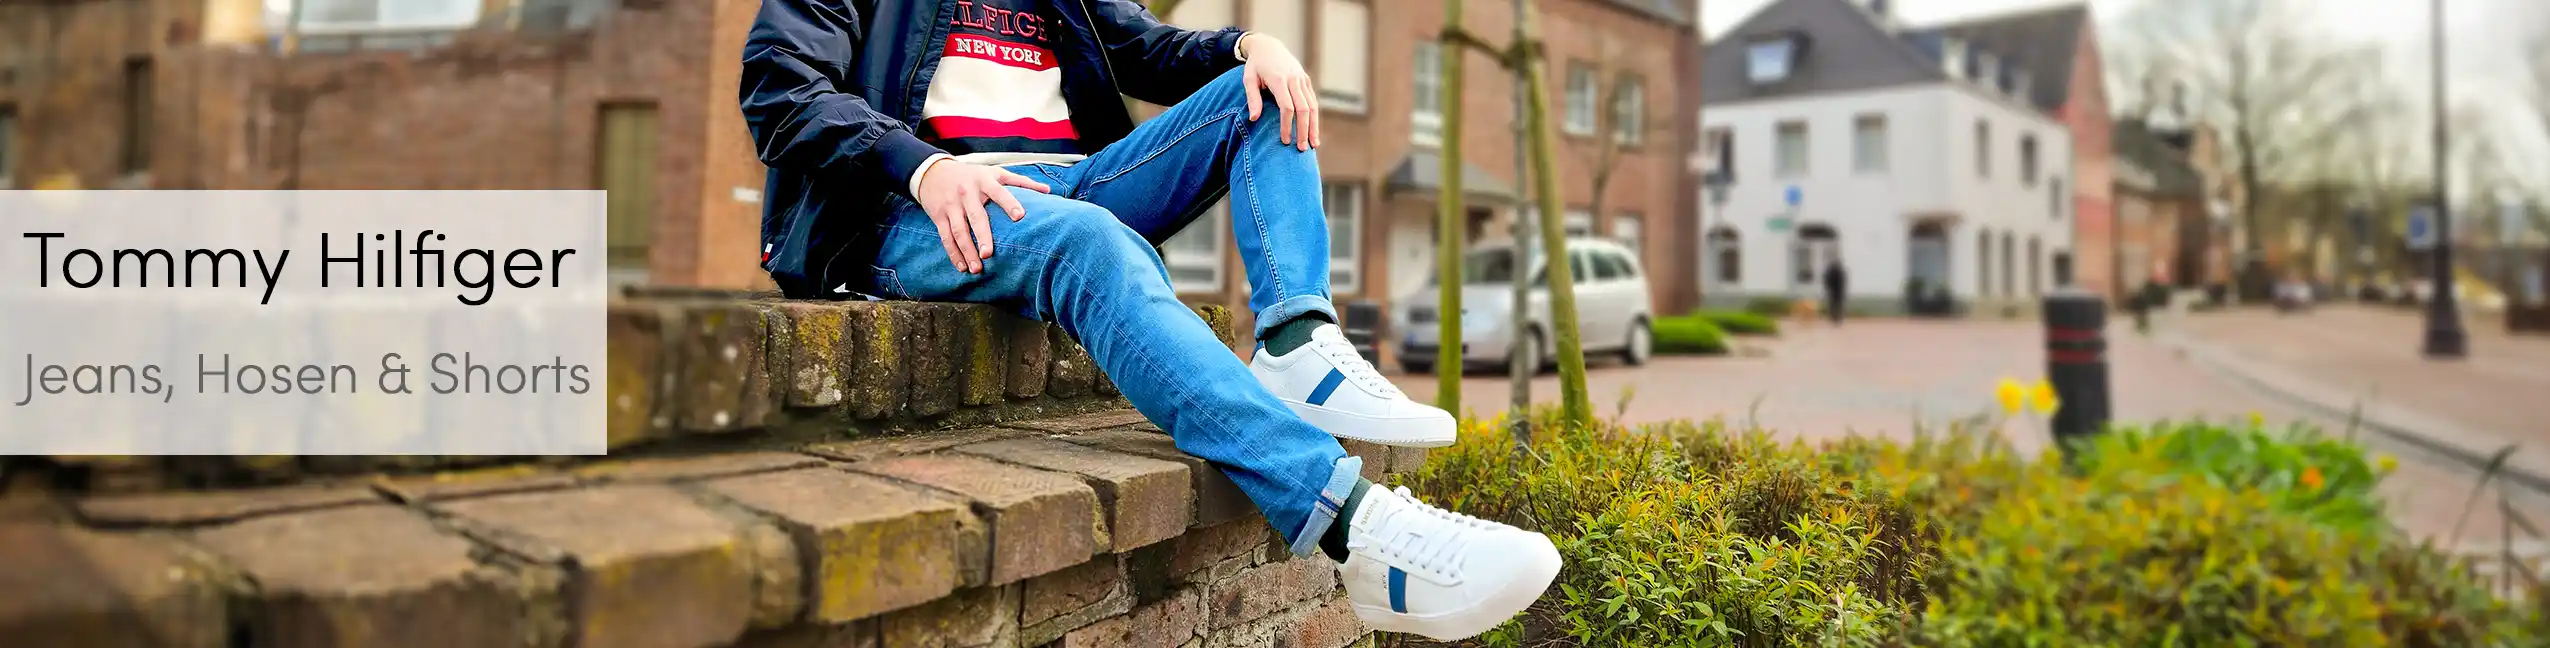 Tommy Hilfiger Banner Jeans und Hosen webp